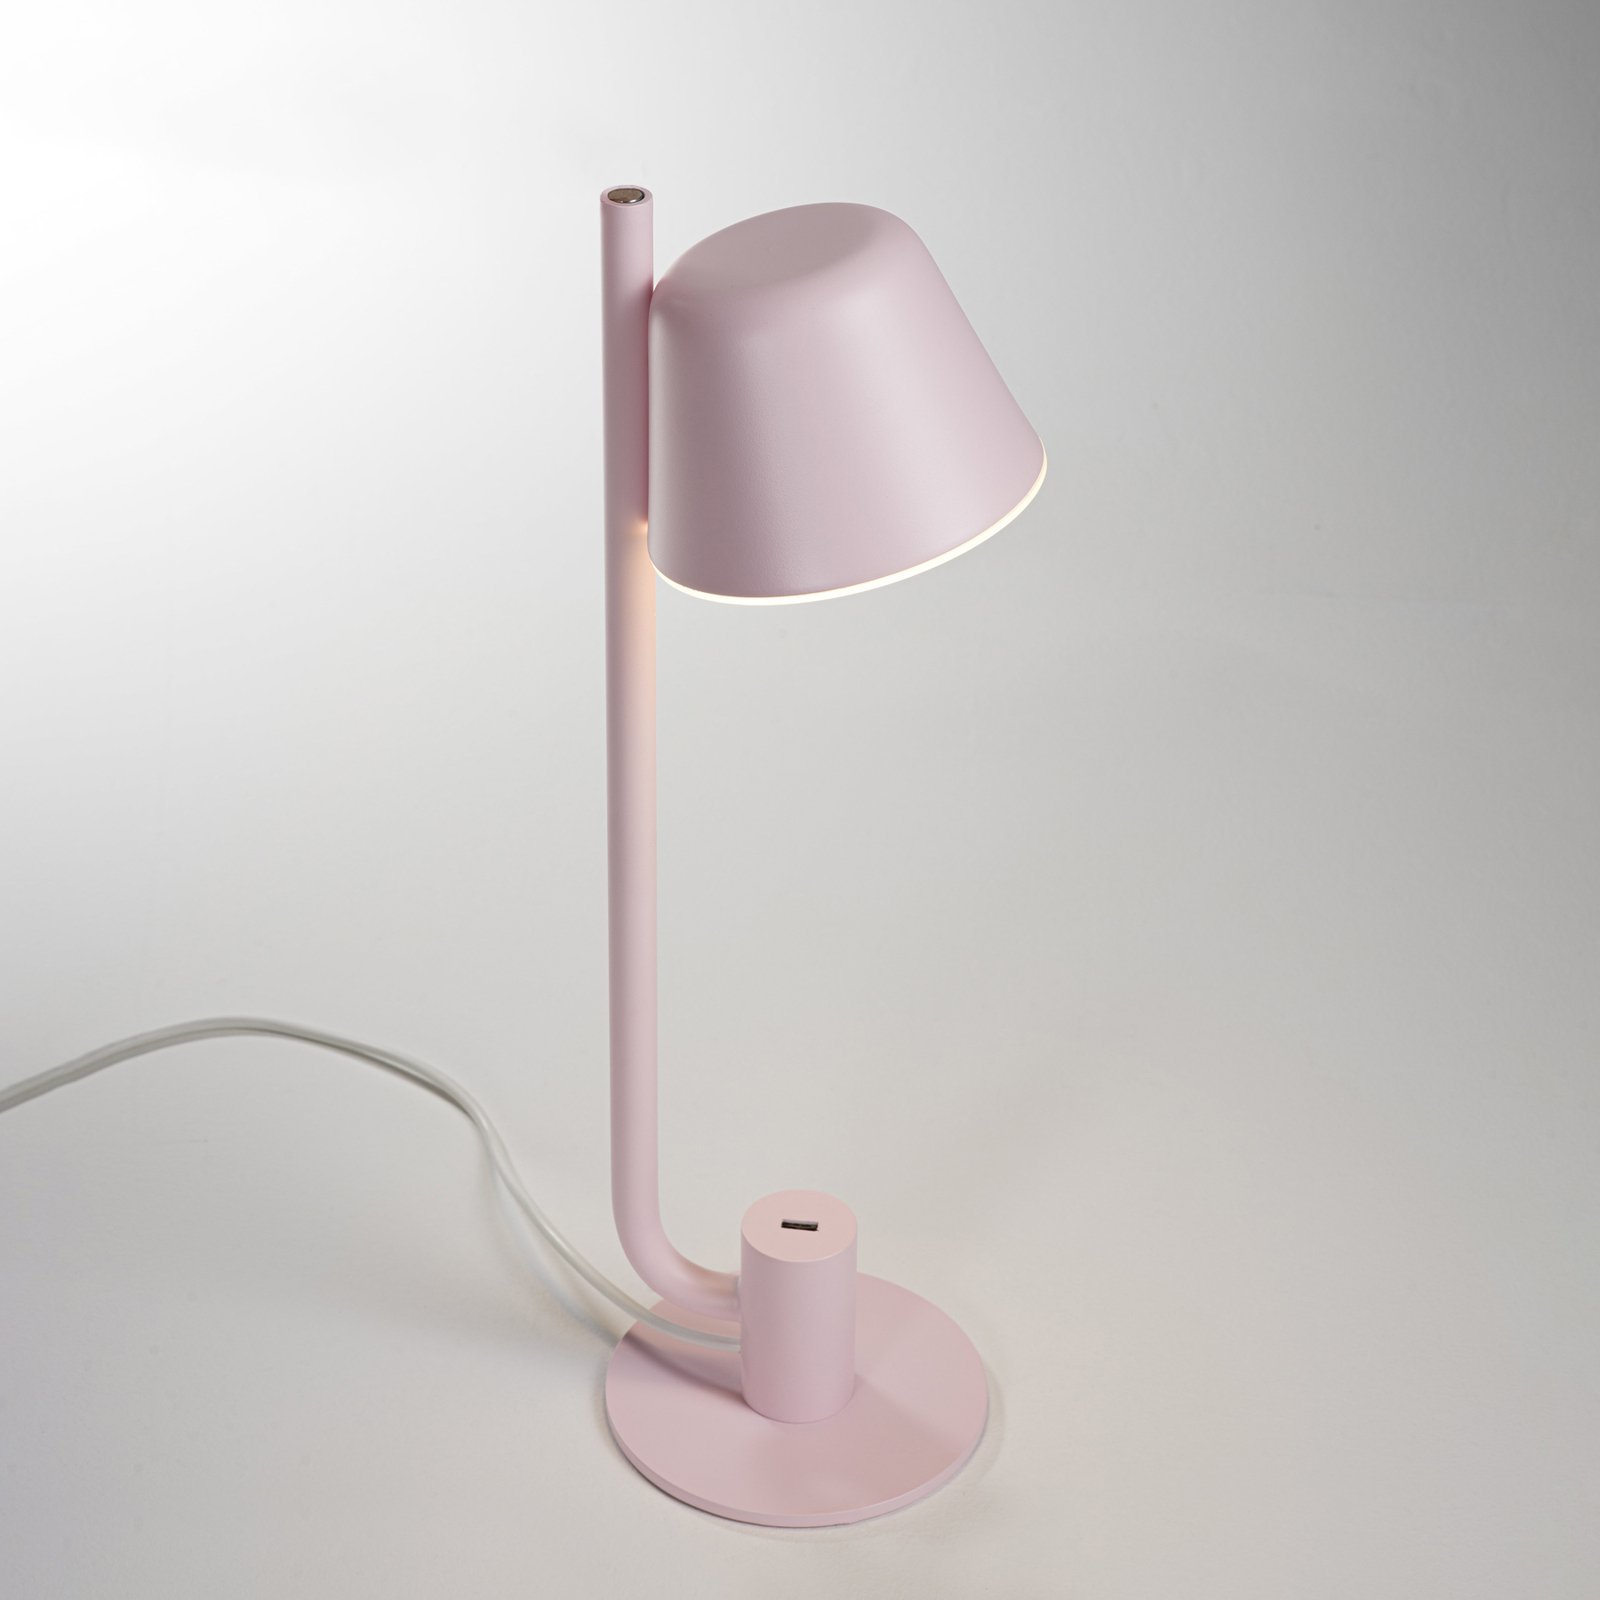 Prandina Bima T1 USB LED table lamp, pink